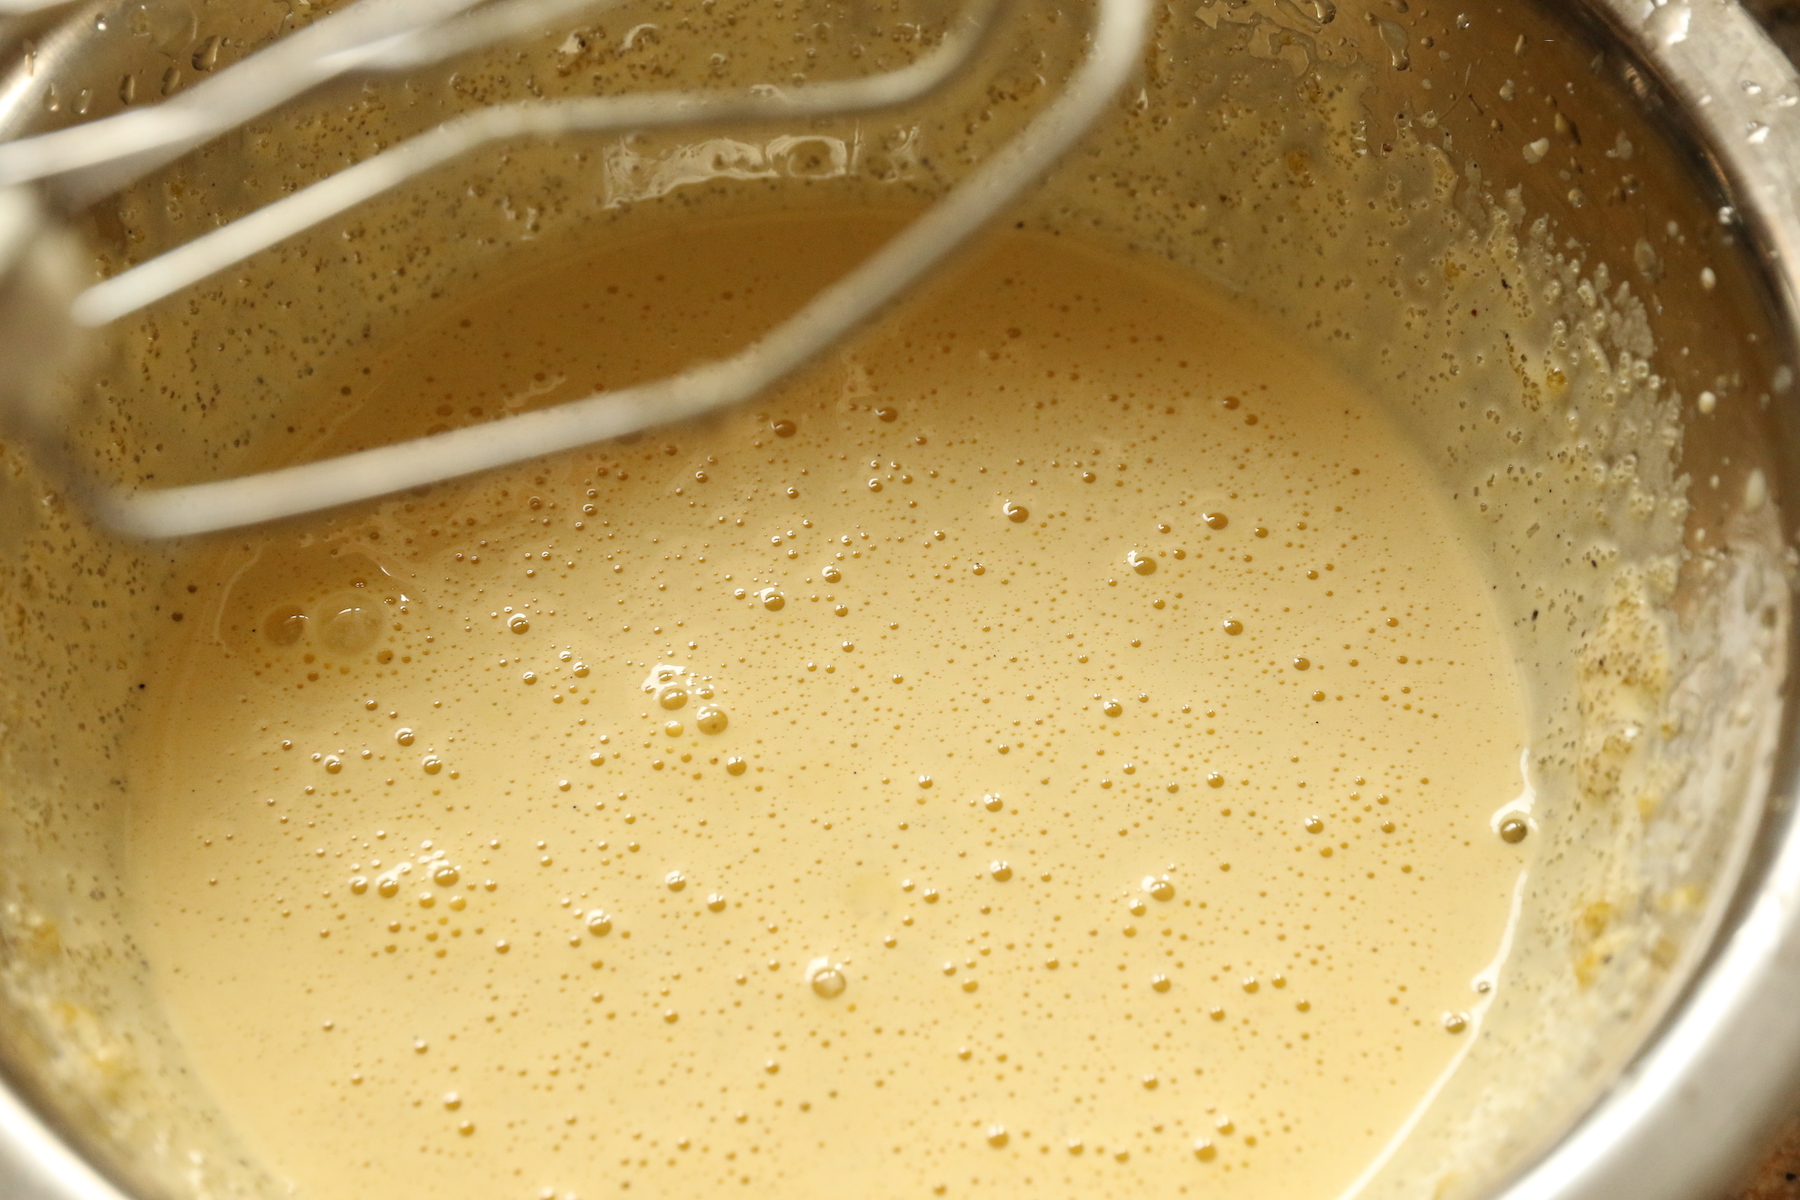 Au batteur, faites blanchir les jaunes d'oeufs avec le sucre et ajouter la vanille